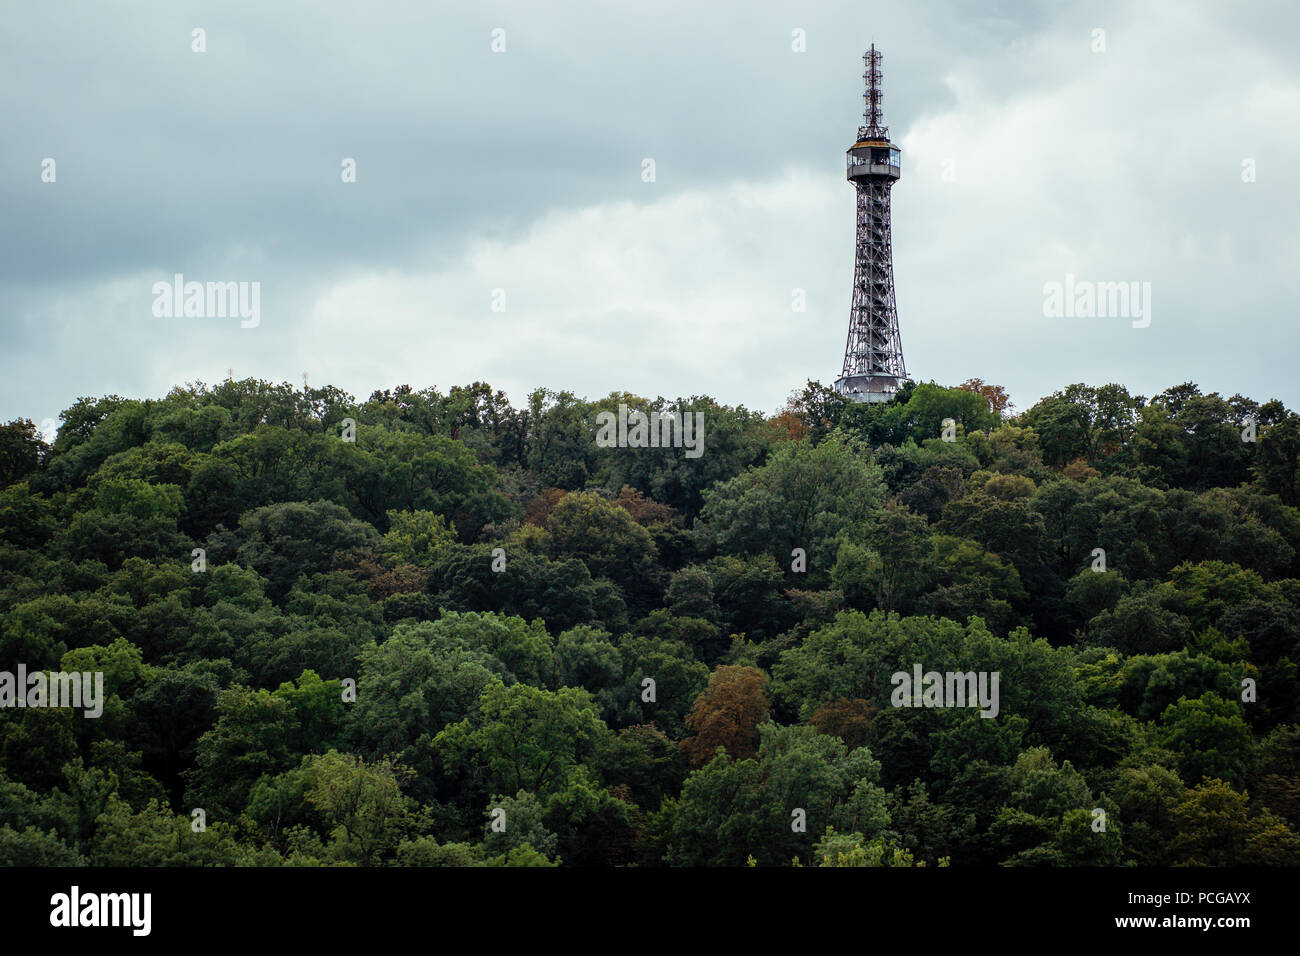 La tour d'observation de Petřín, cadre métallique en acier près de réplique  de la Tour Eiffel, à Prague, République tchèque - vu à travers une forêt  d'arbres Photo Stock - Alamy